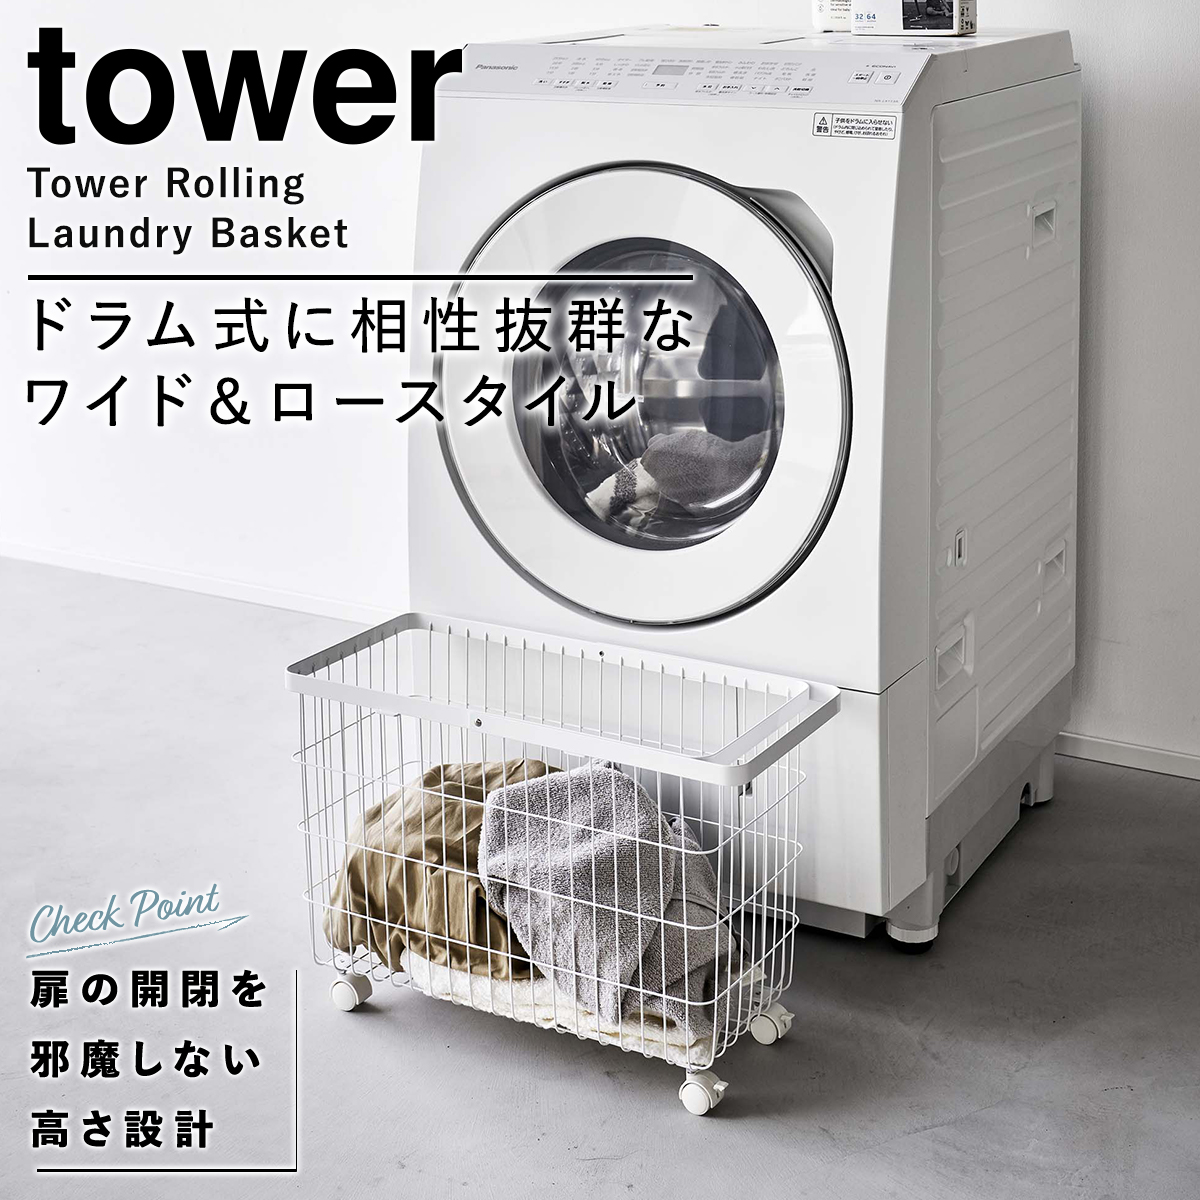 山崎実業(yamazaki) tower【ランドリーバスケット タワー キャスター